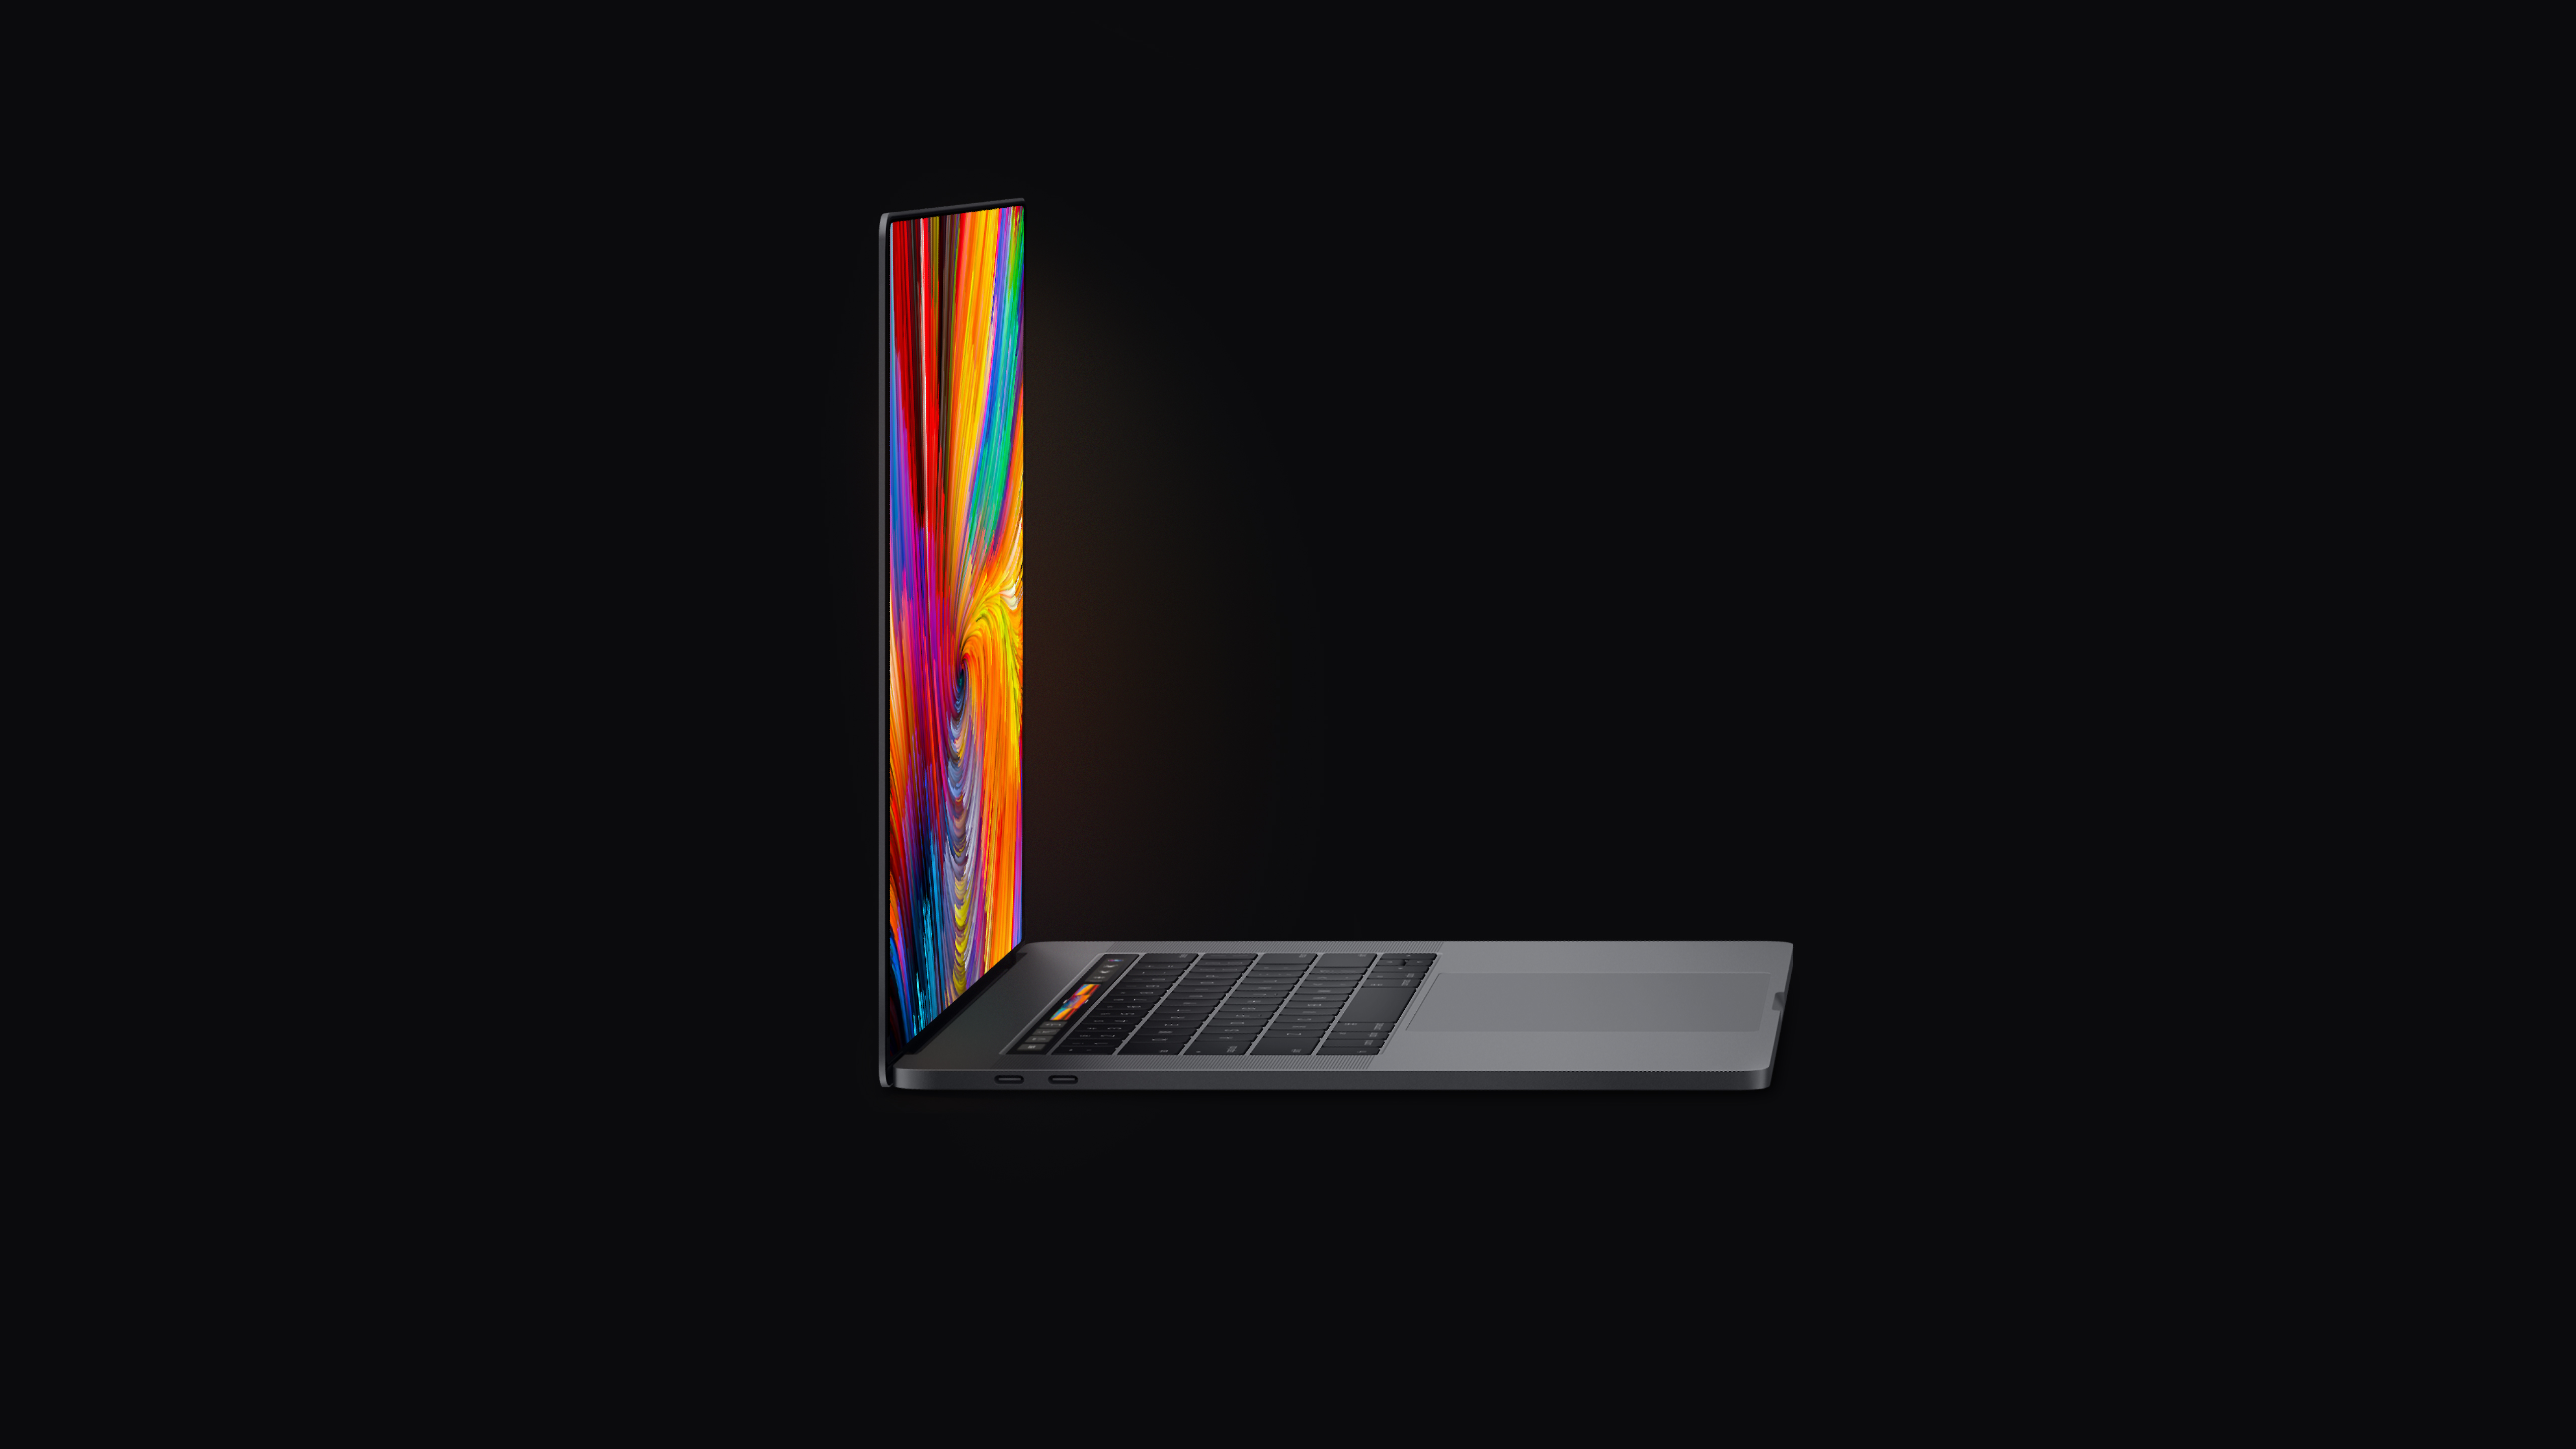 Conceito do novo MacBook Pro de 16"